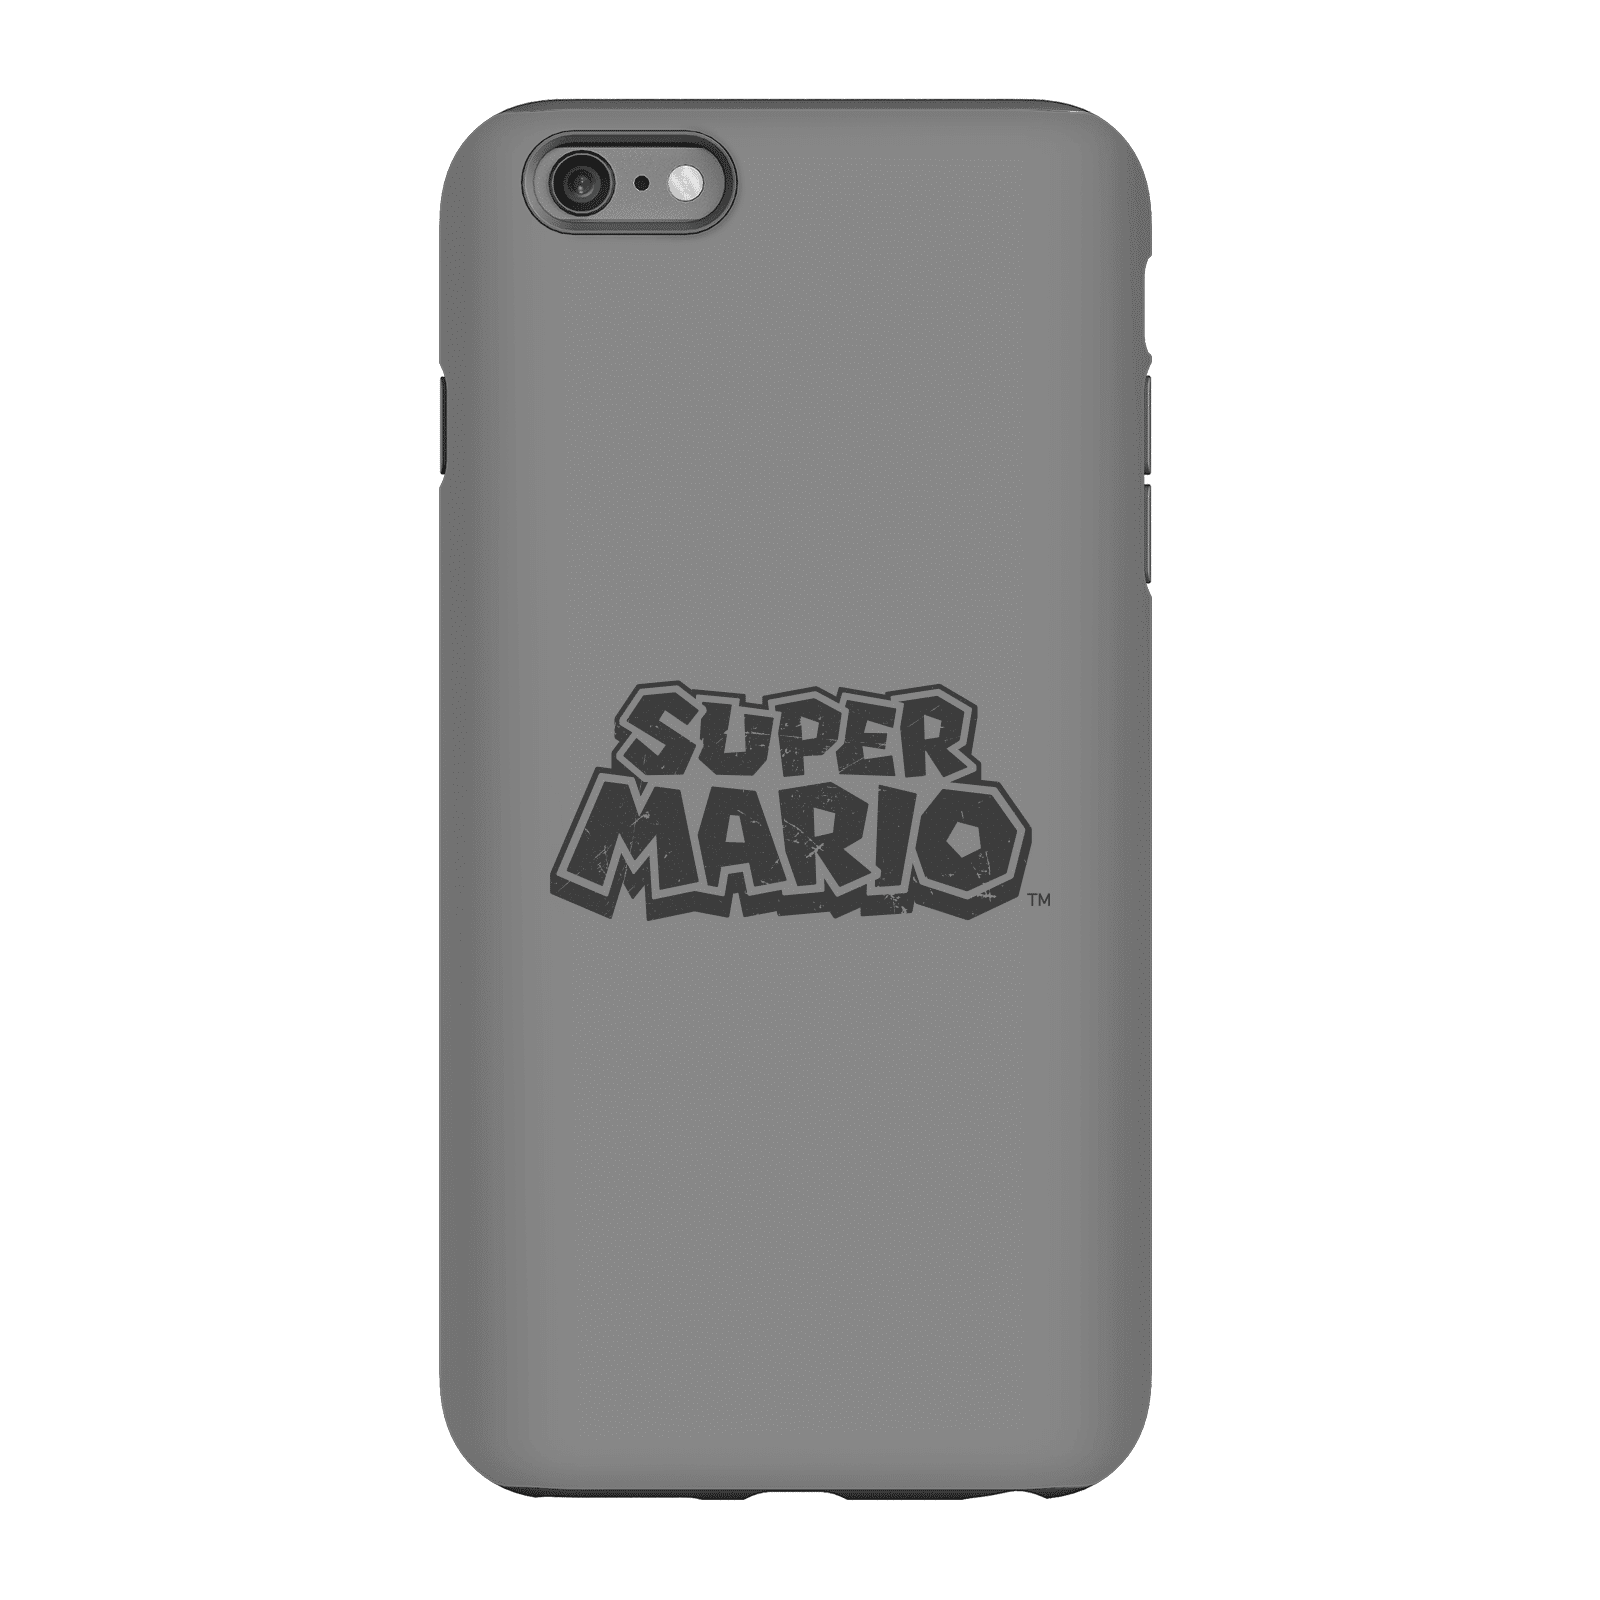 Nintendo Super Mario Distressed Logo Phone Case - iPhone 6 Plus - Tough Case - Gloss